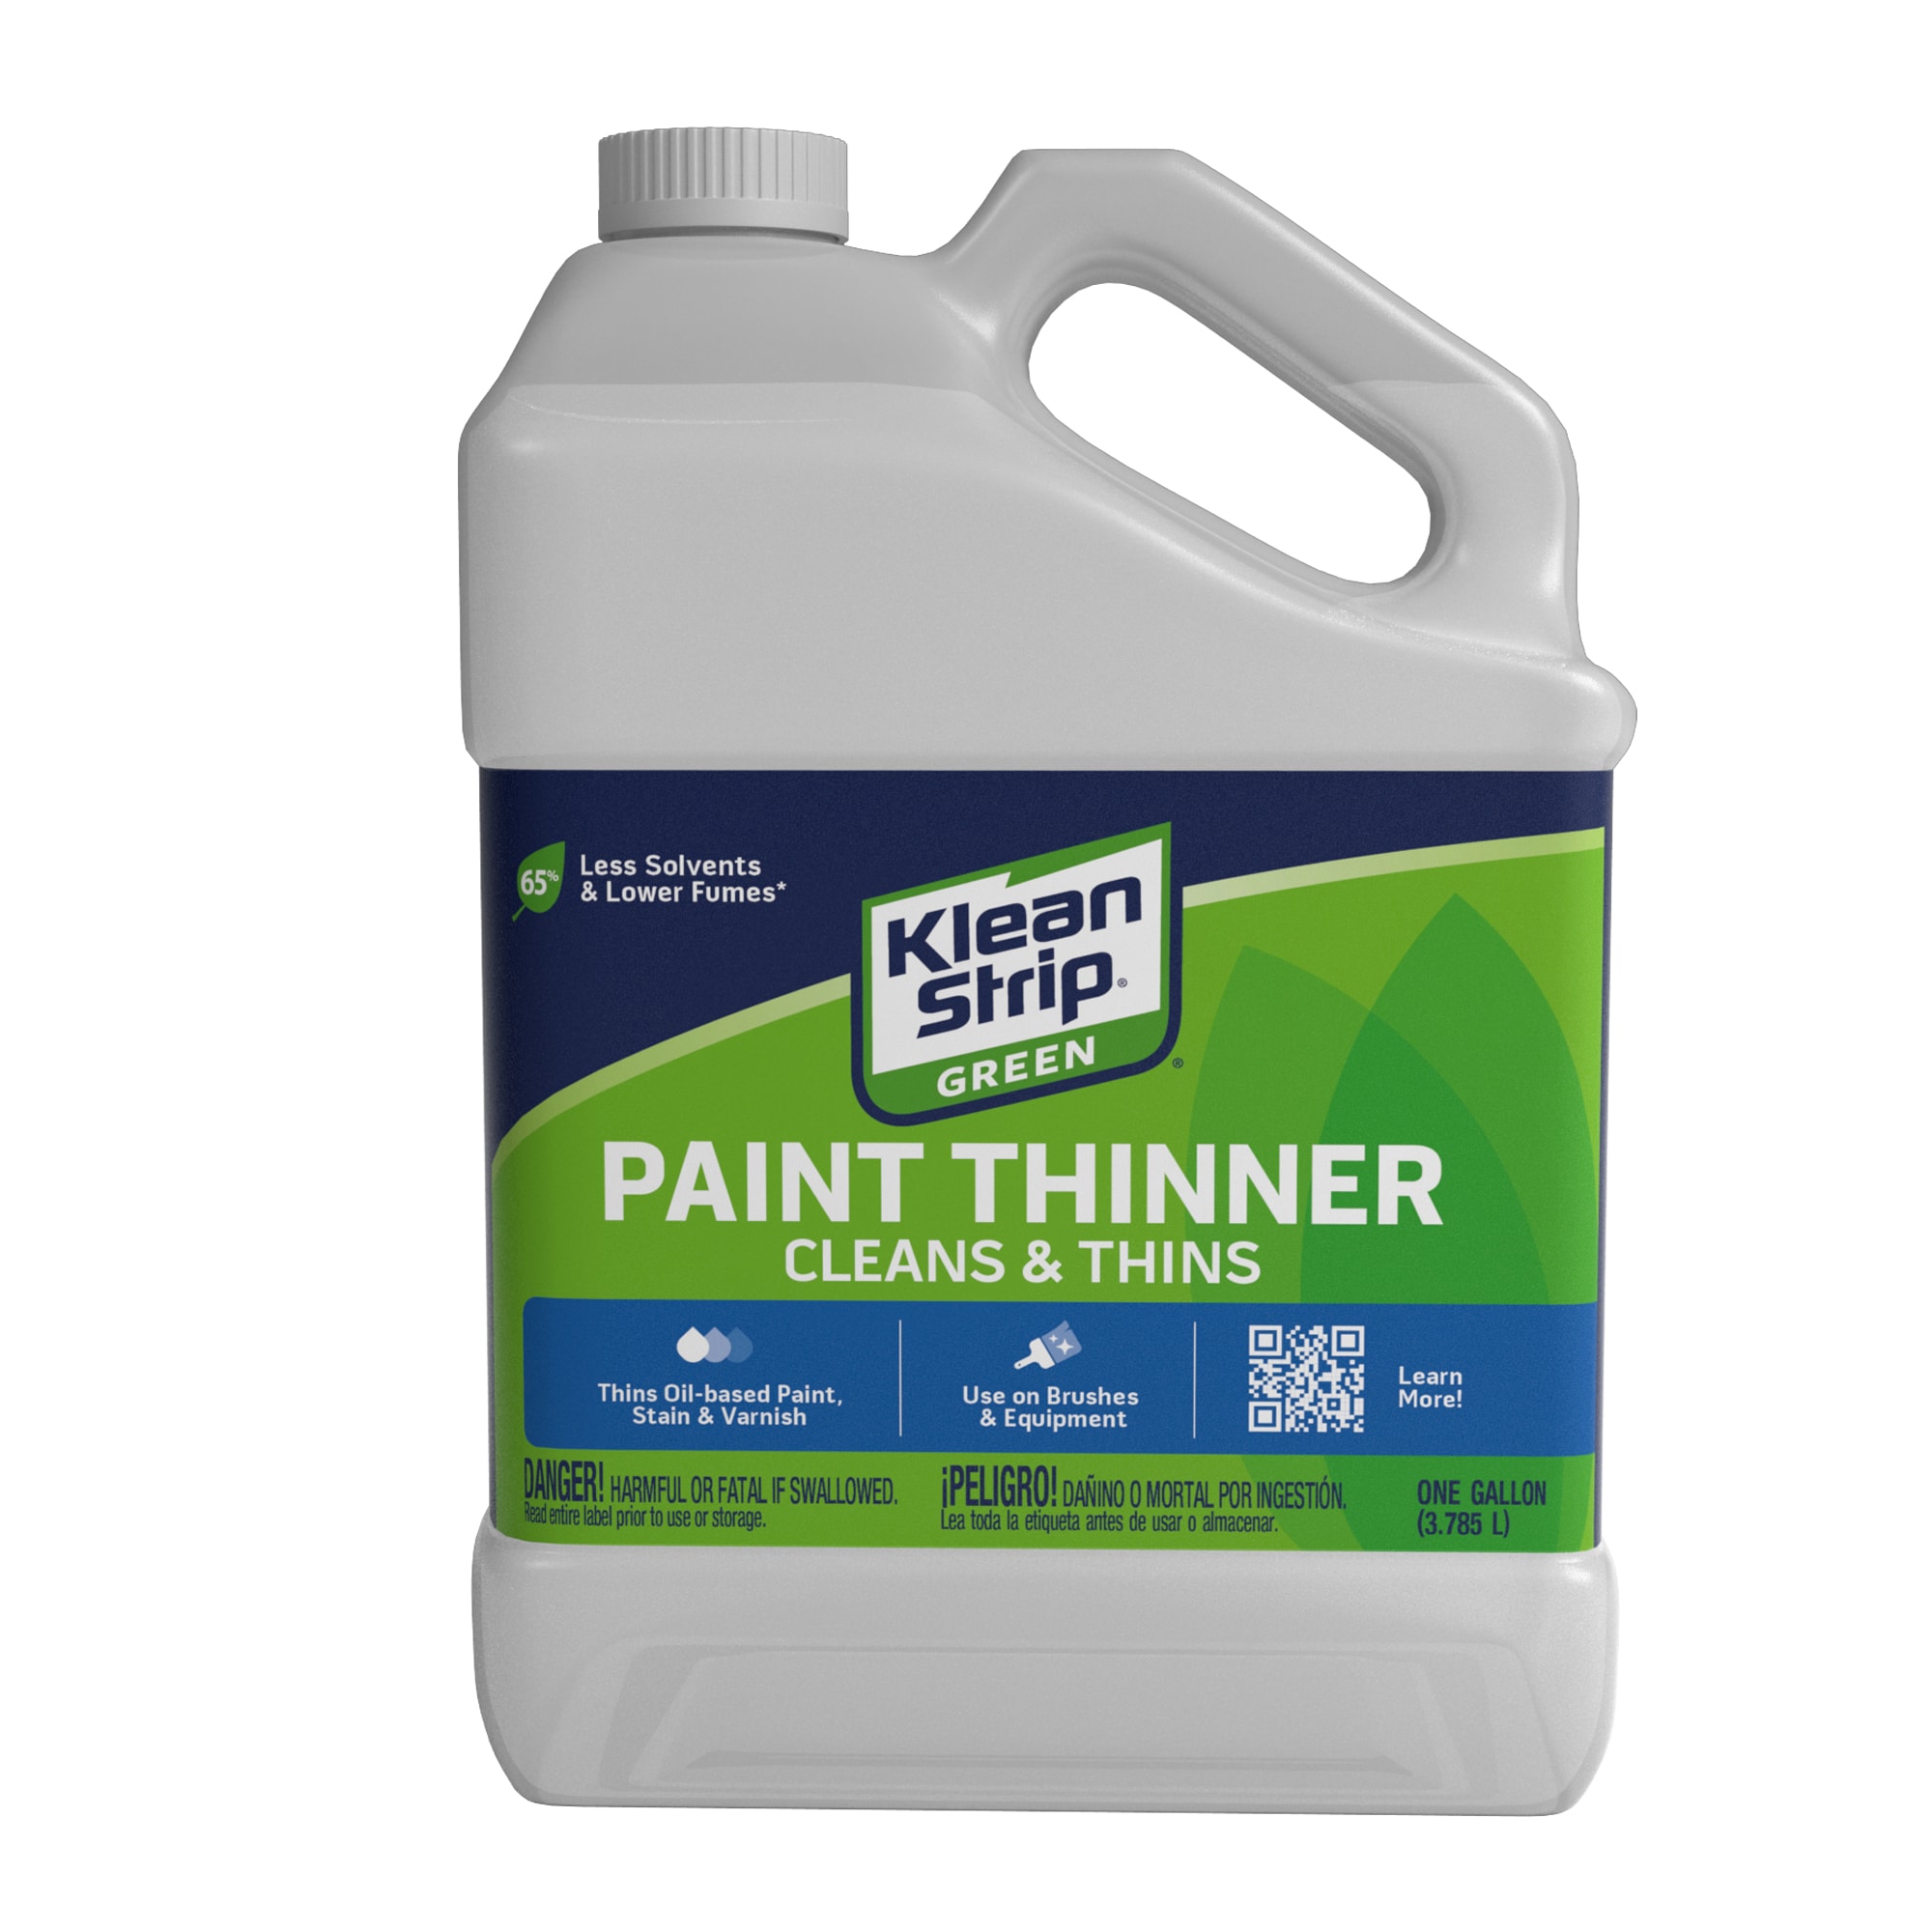 Klean Strip Paint Thinner - 128 fl oz